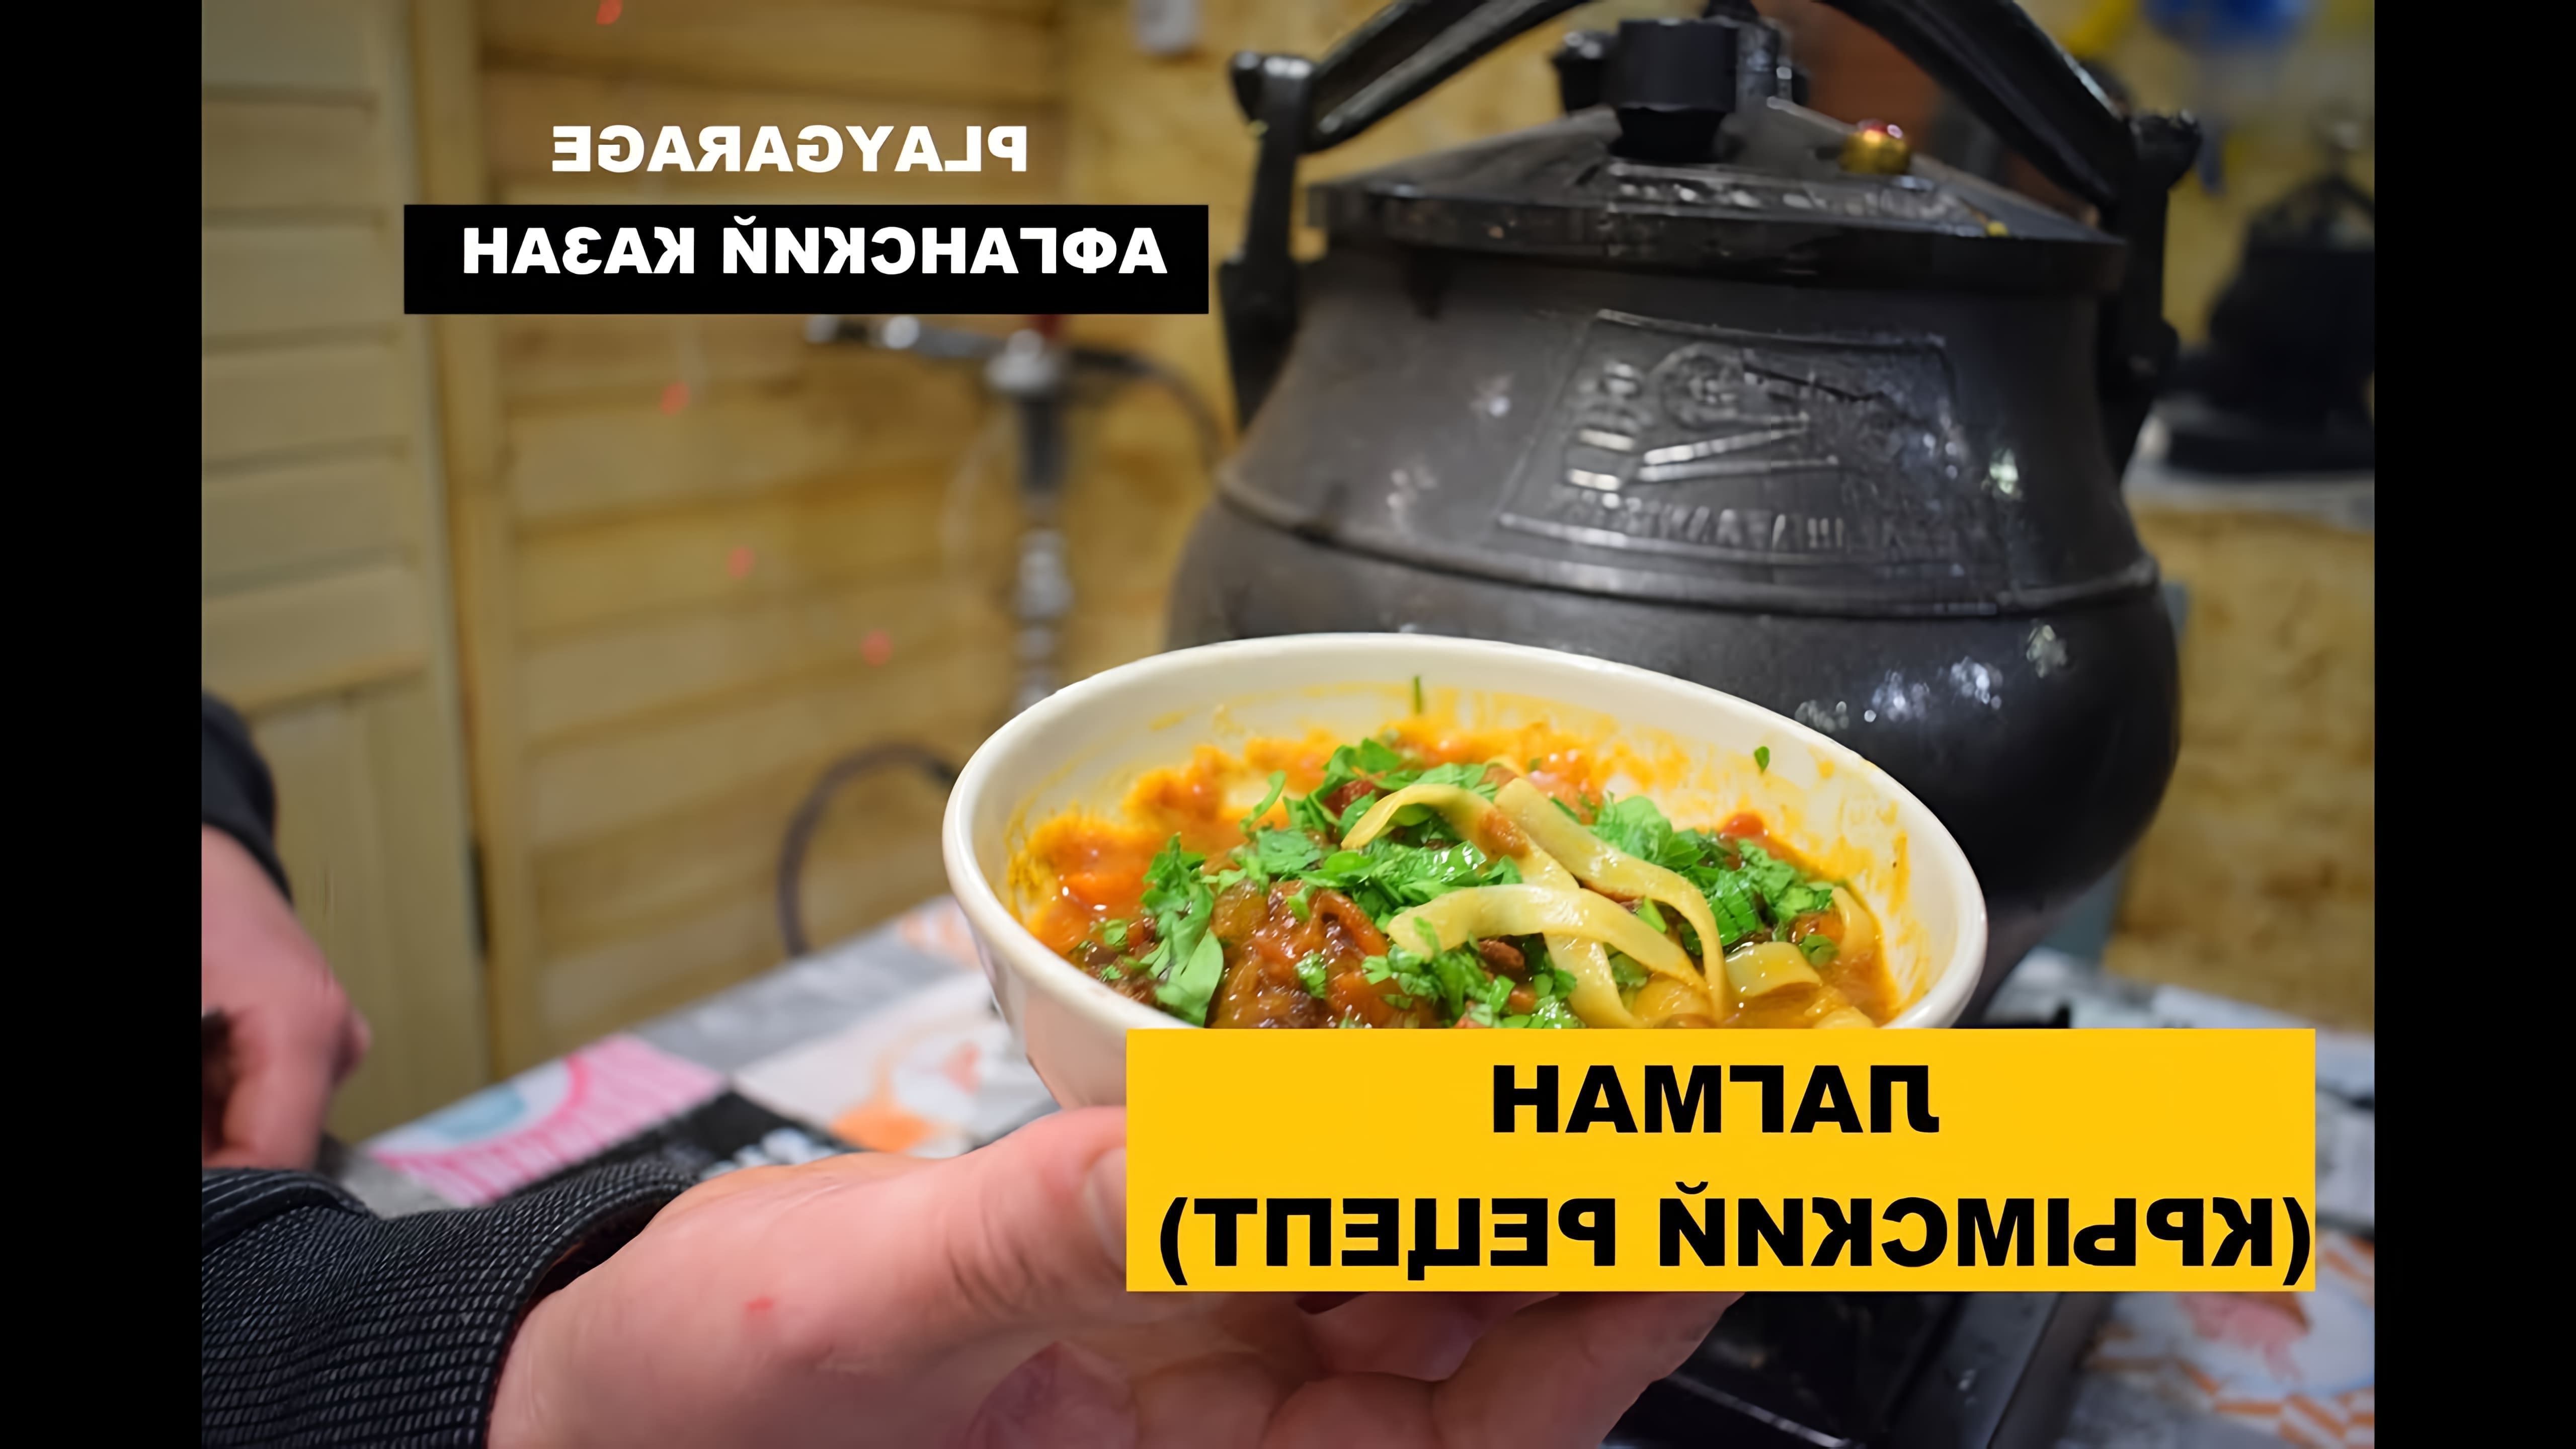 Видео посвящено приготовлению лагмана, афганского блюда, в афганском казане по традиционному крымскому рецепту